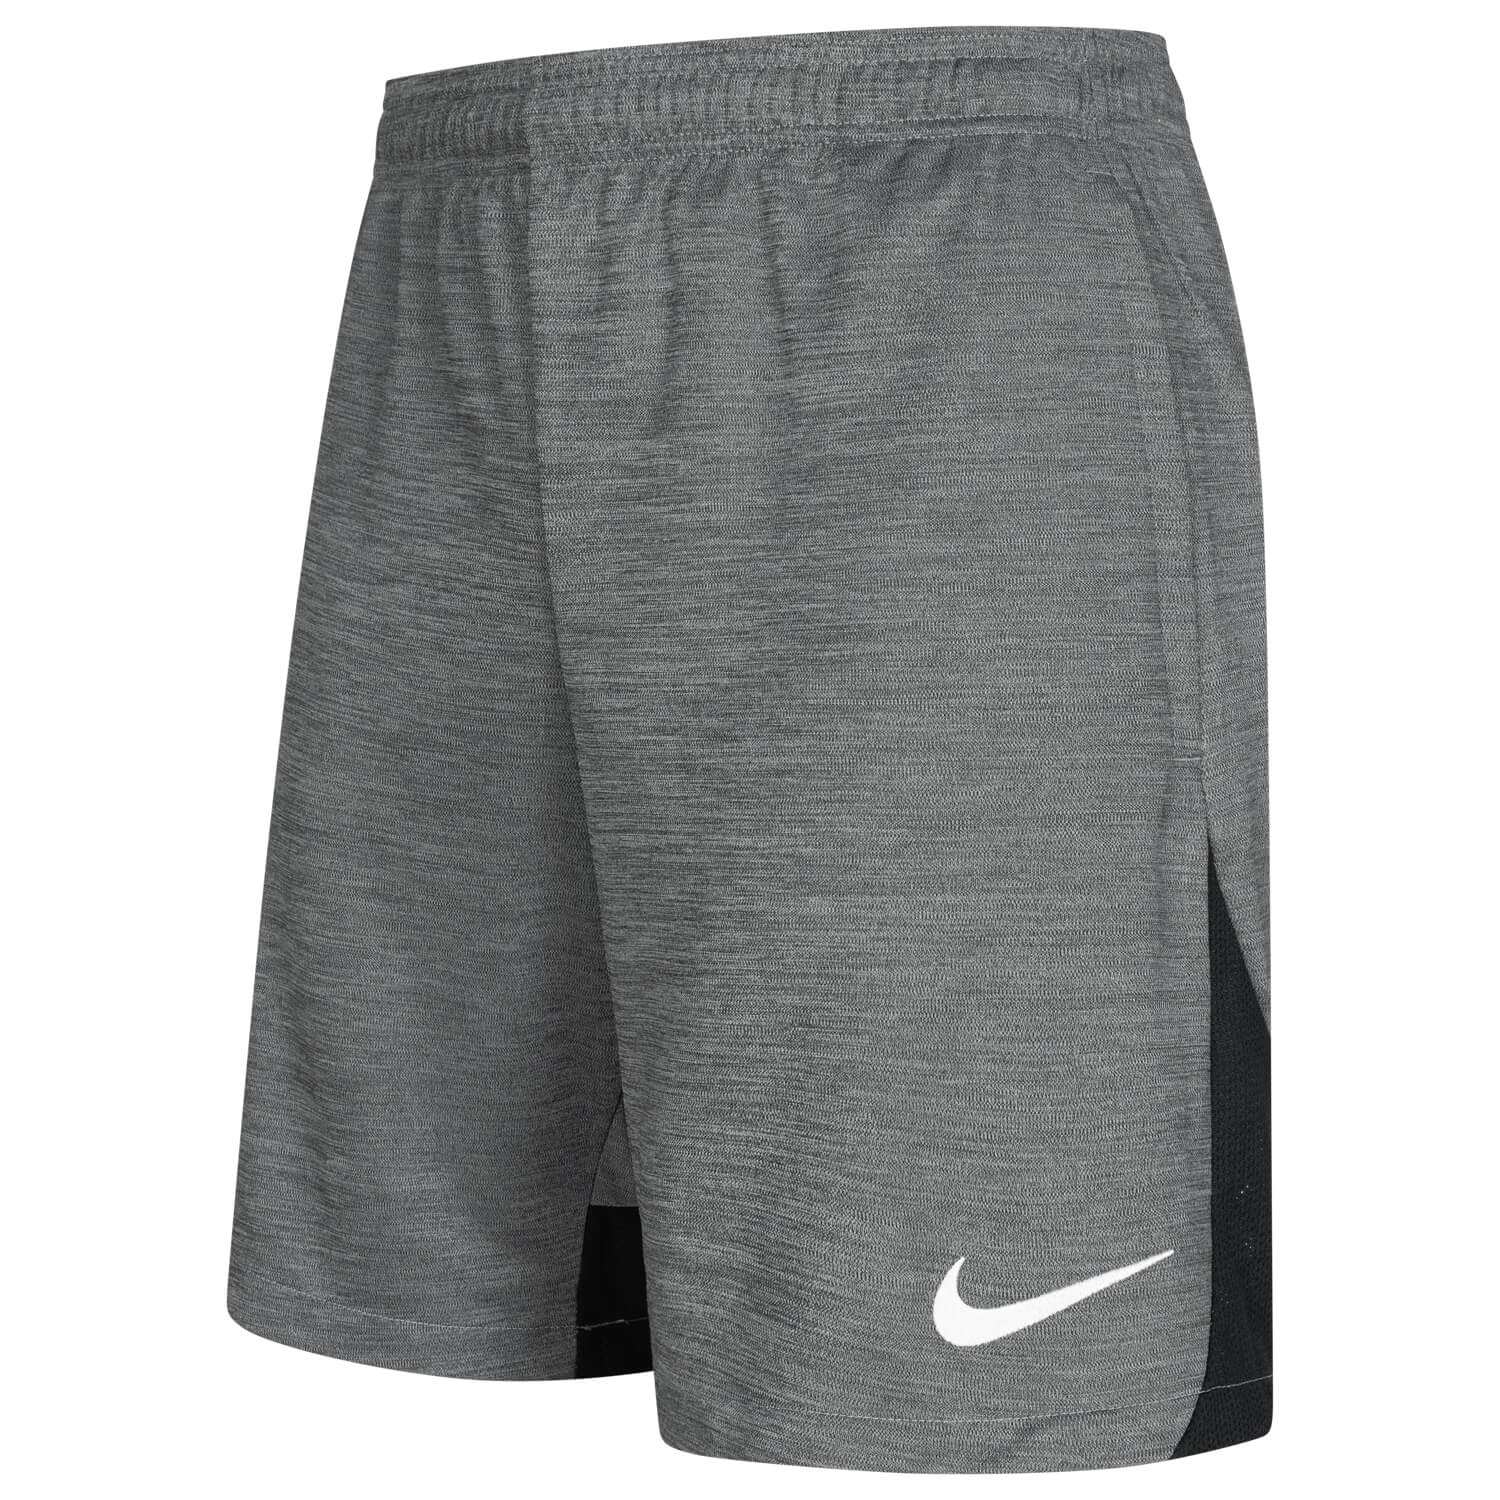 Bild 3: Nike Sport-Shorts Grau